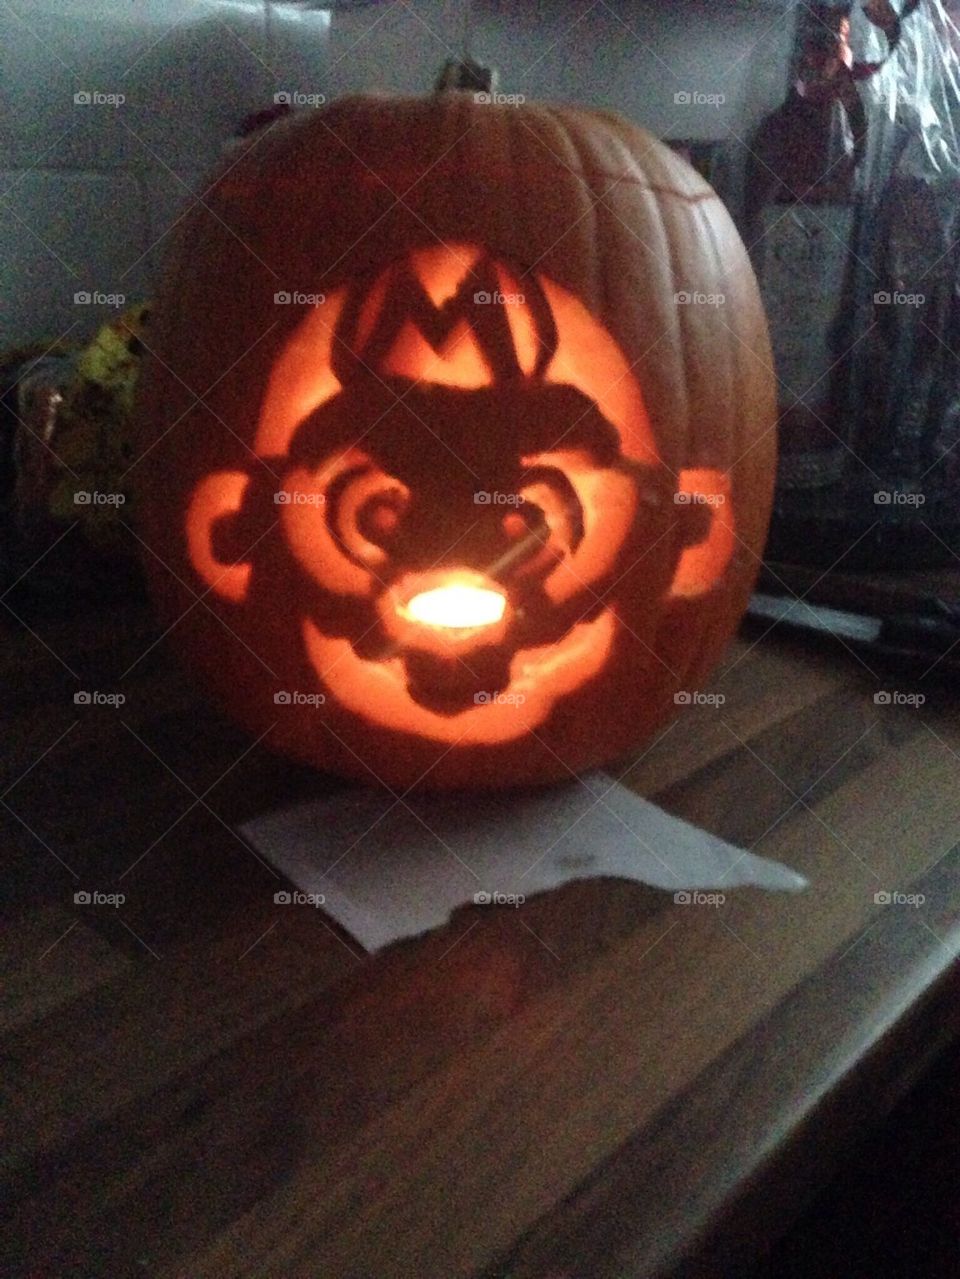 Mario carved pumpkin